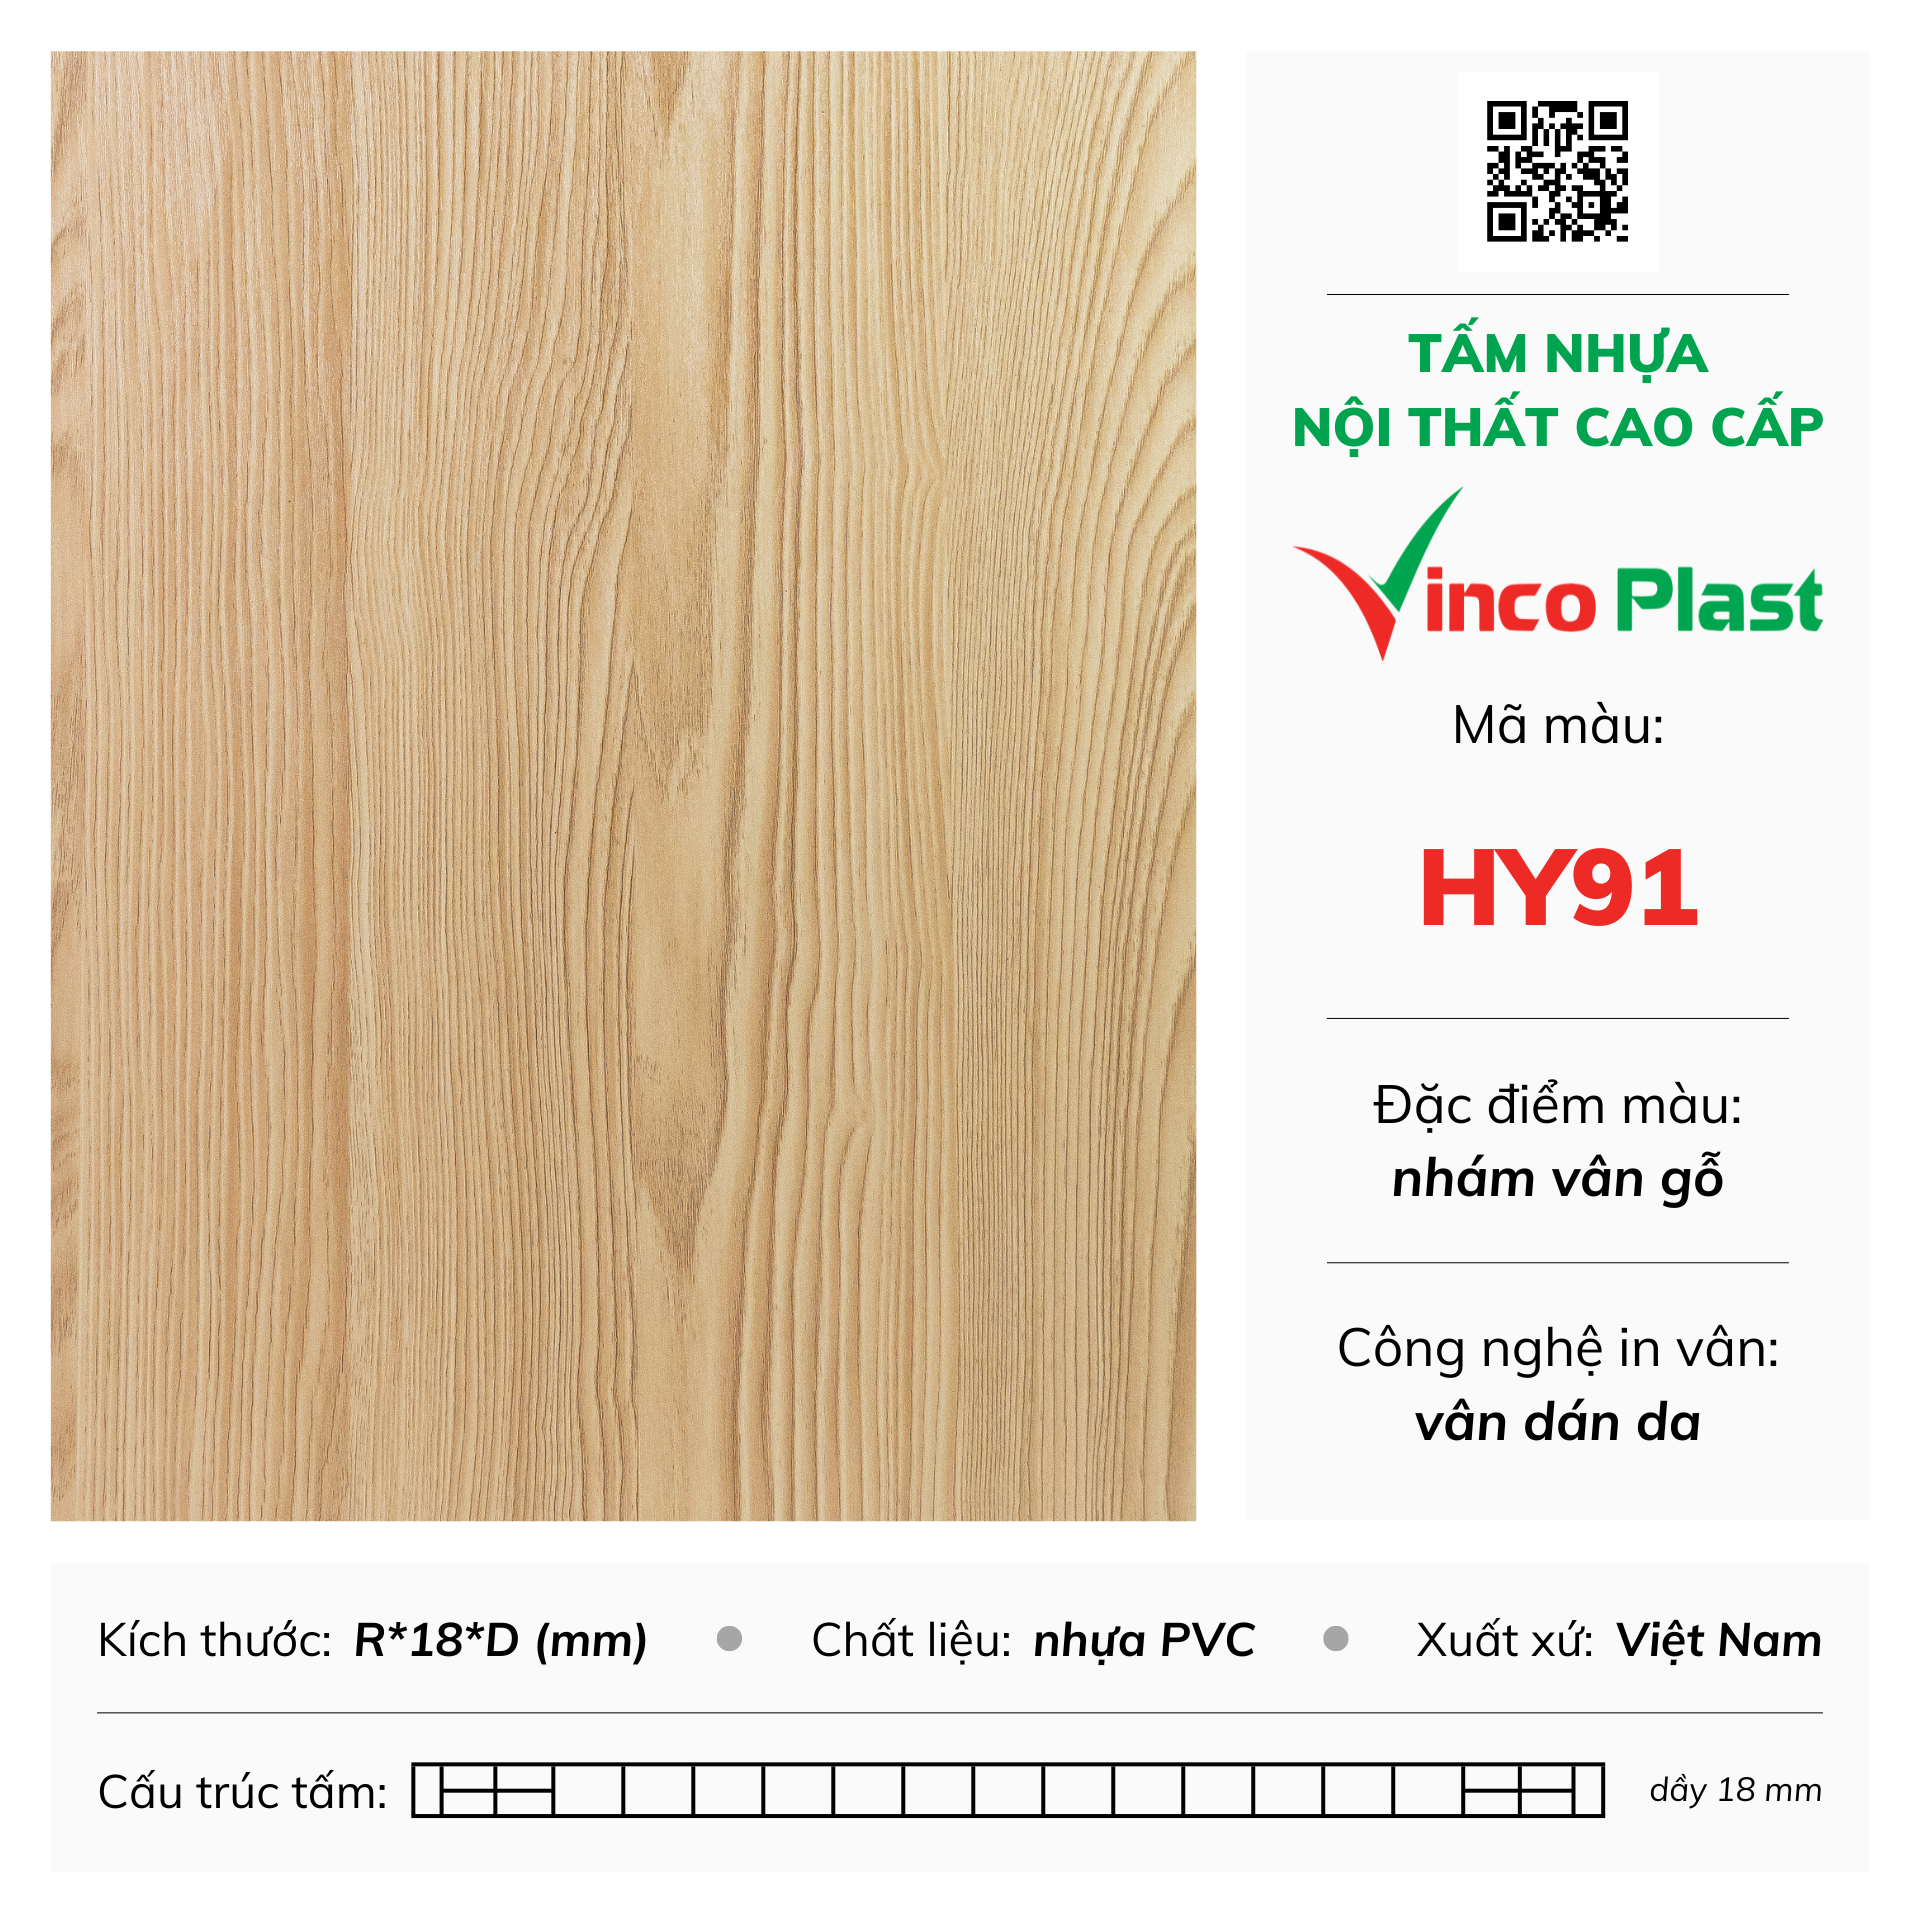 Tấm nhựa nội thất cao cấp Vincoplast màu hy91 (2)